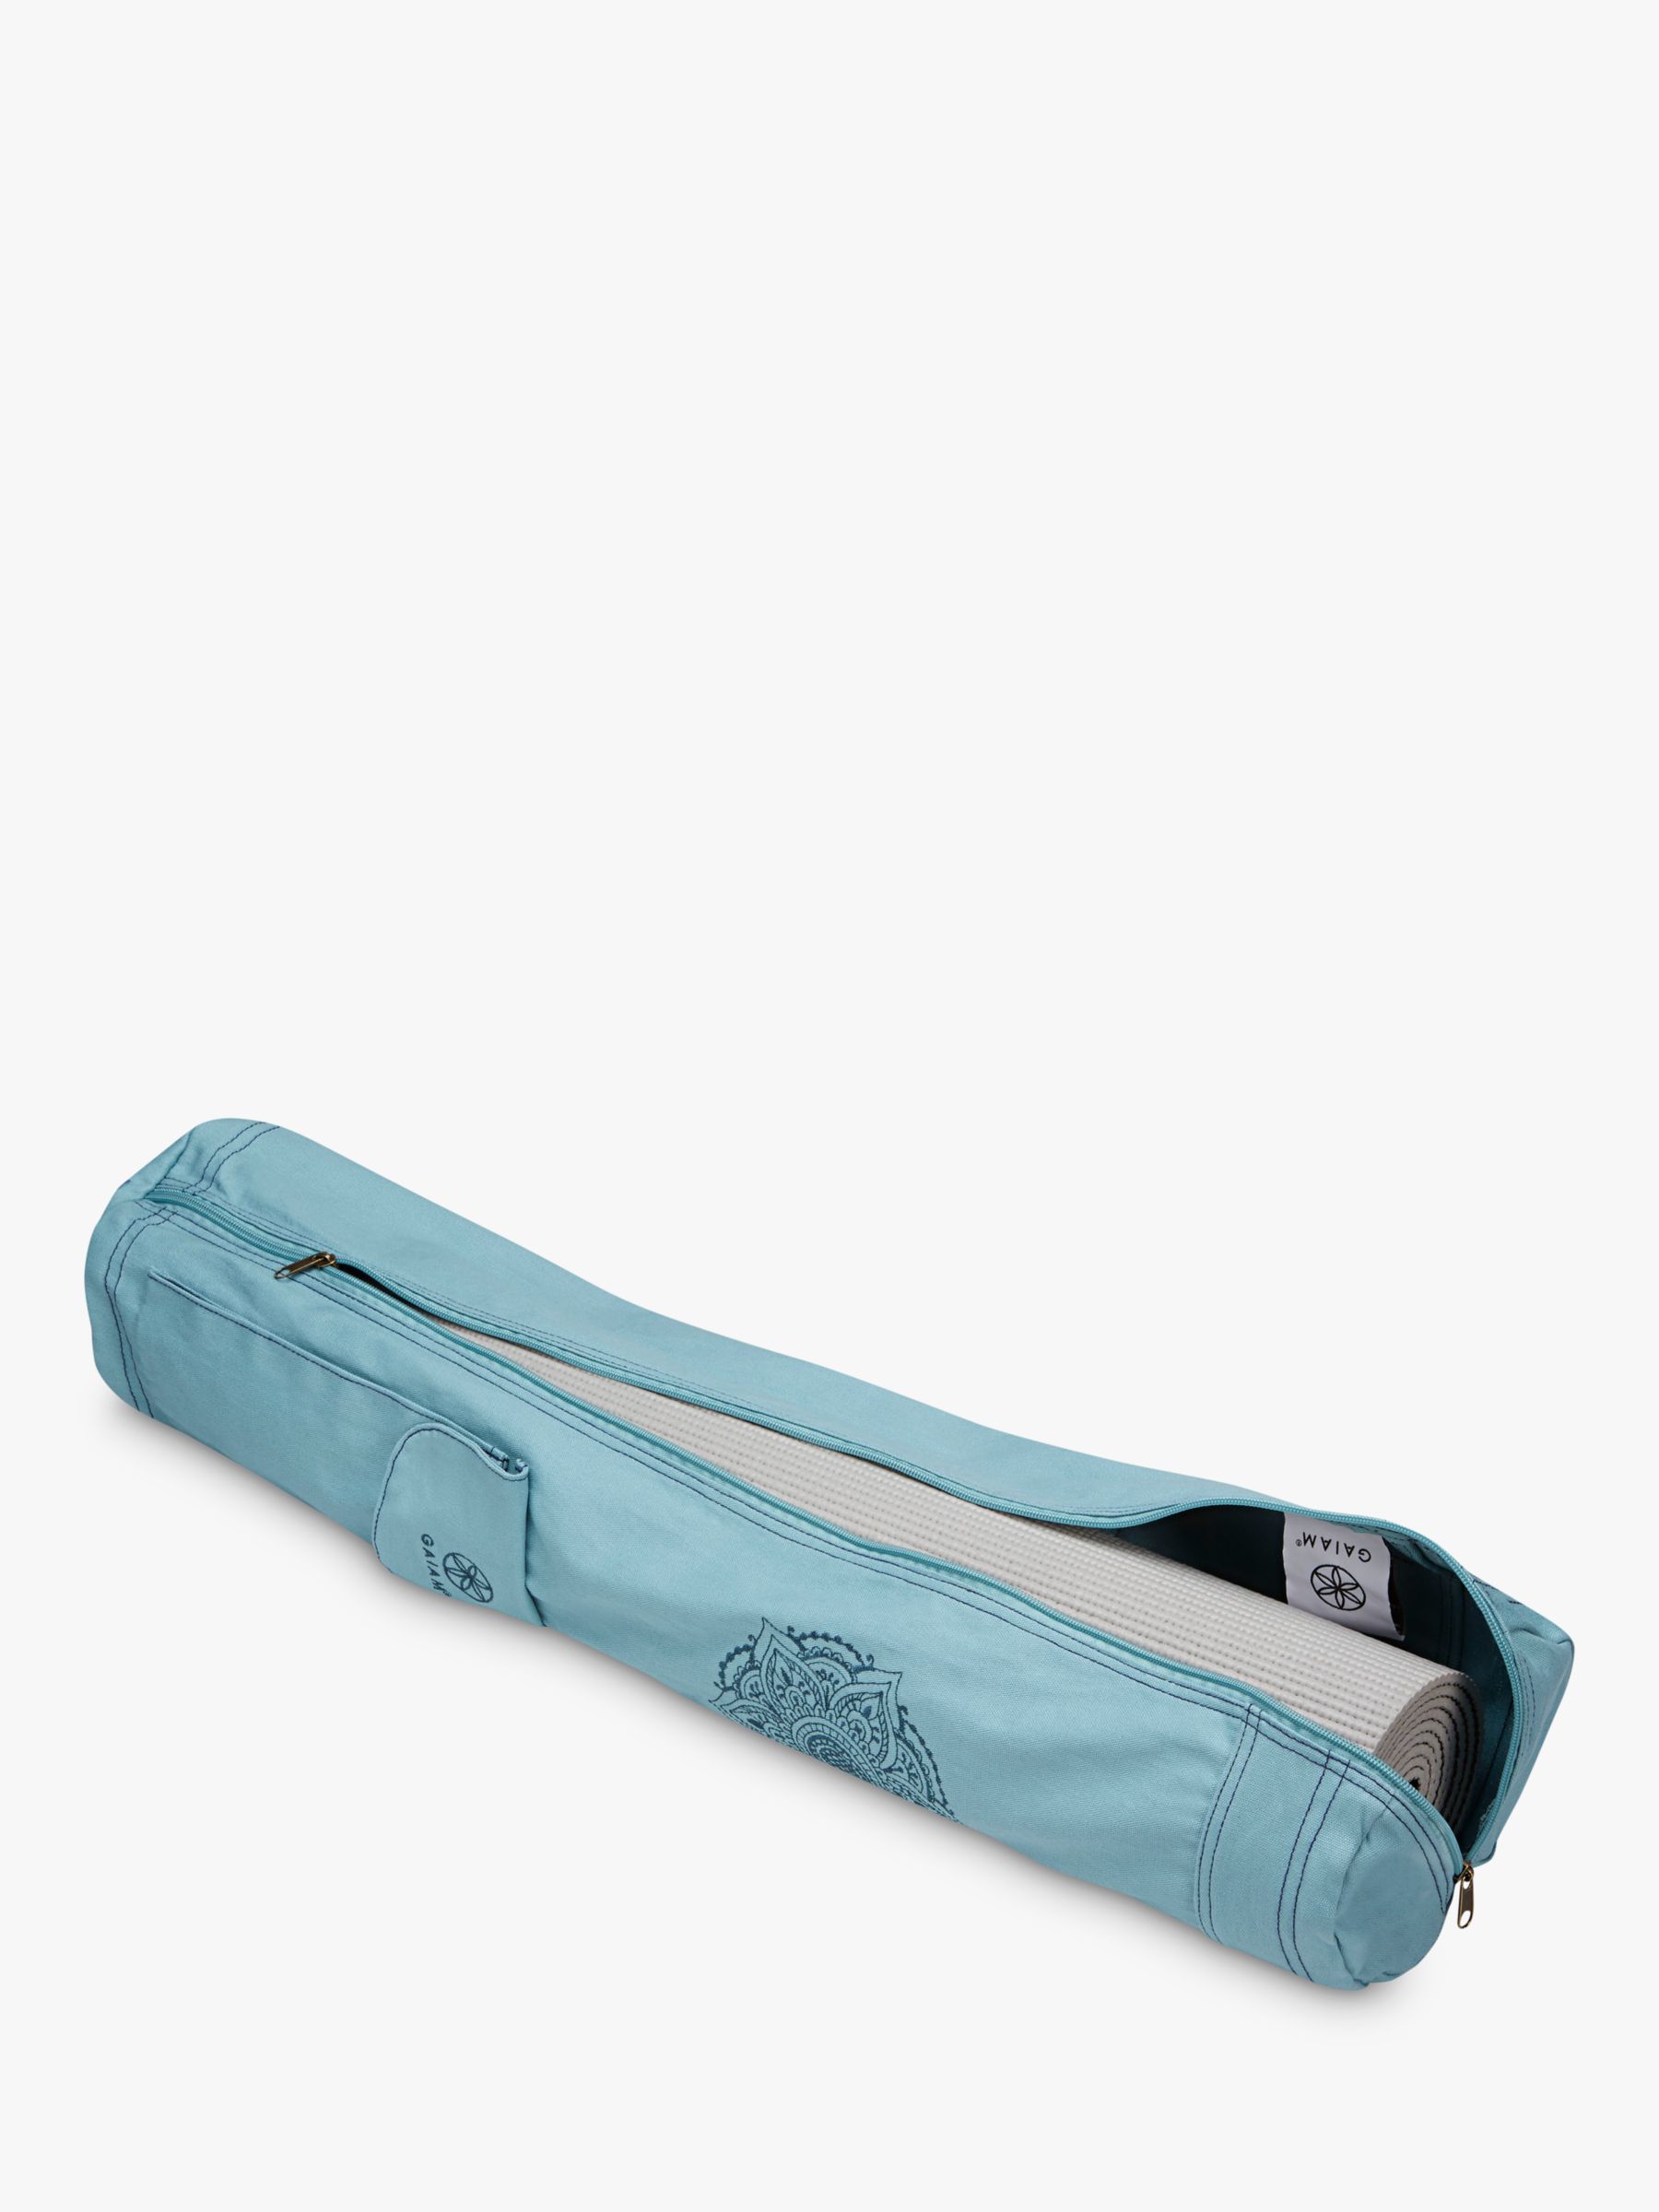 Gaiam Cargo Yoga Mat Bag, Granite Storm